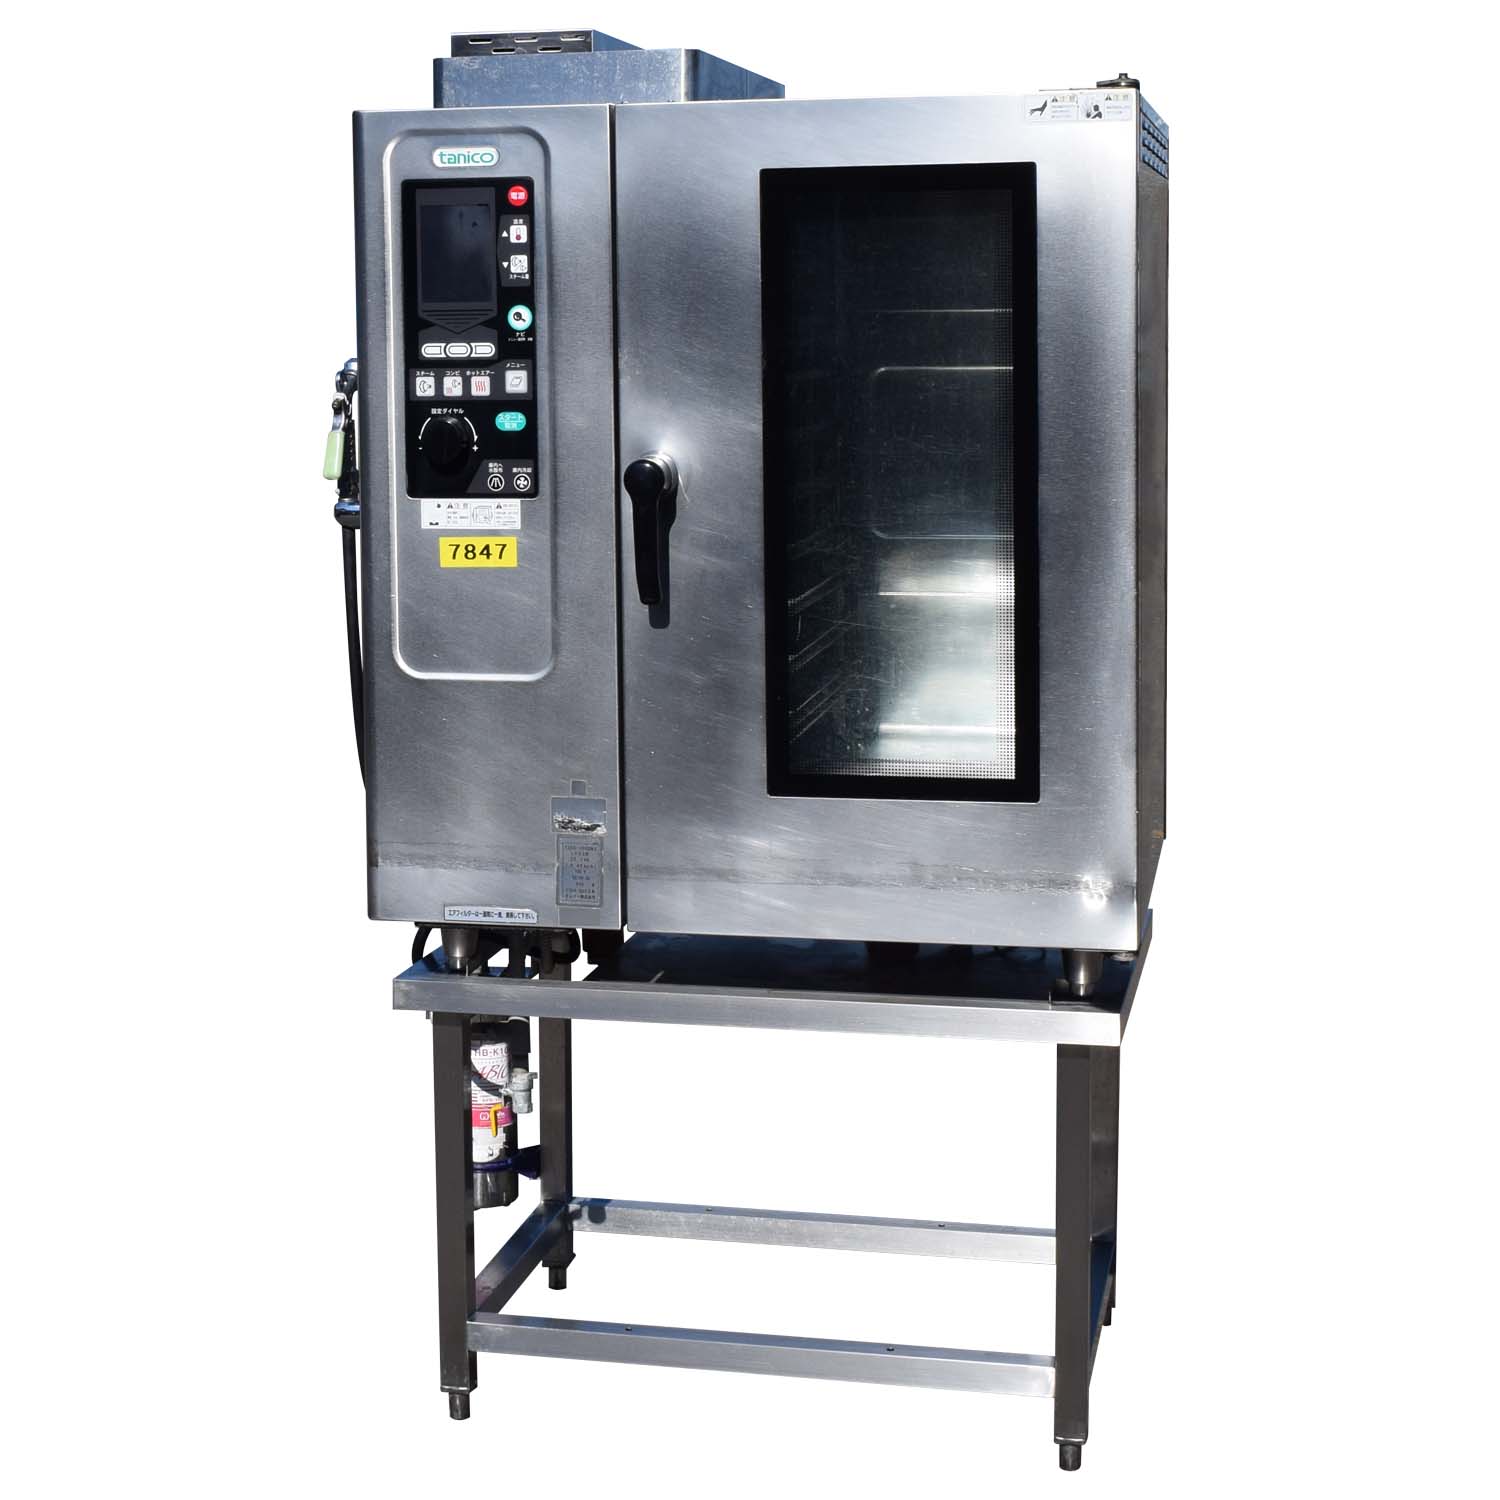 保障できる マルゼン スチームコンベクションオーブン棚付専用架台 SSC-05DST